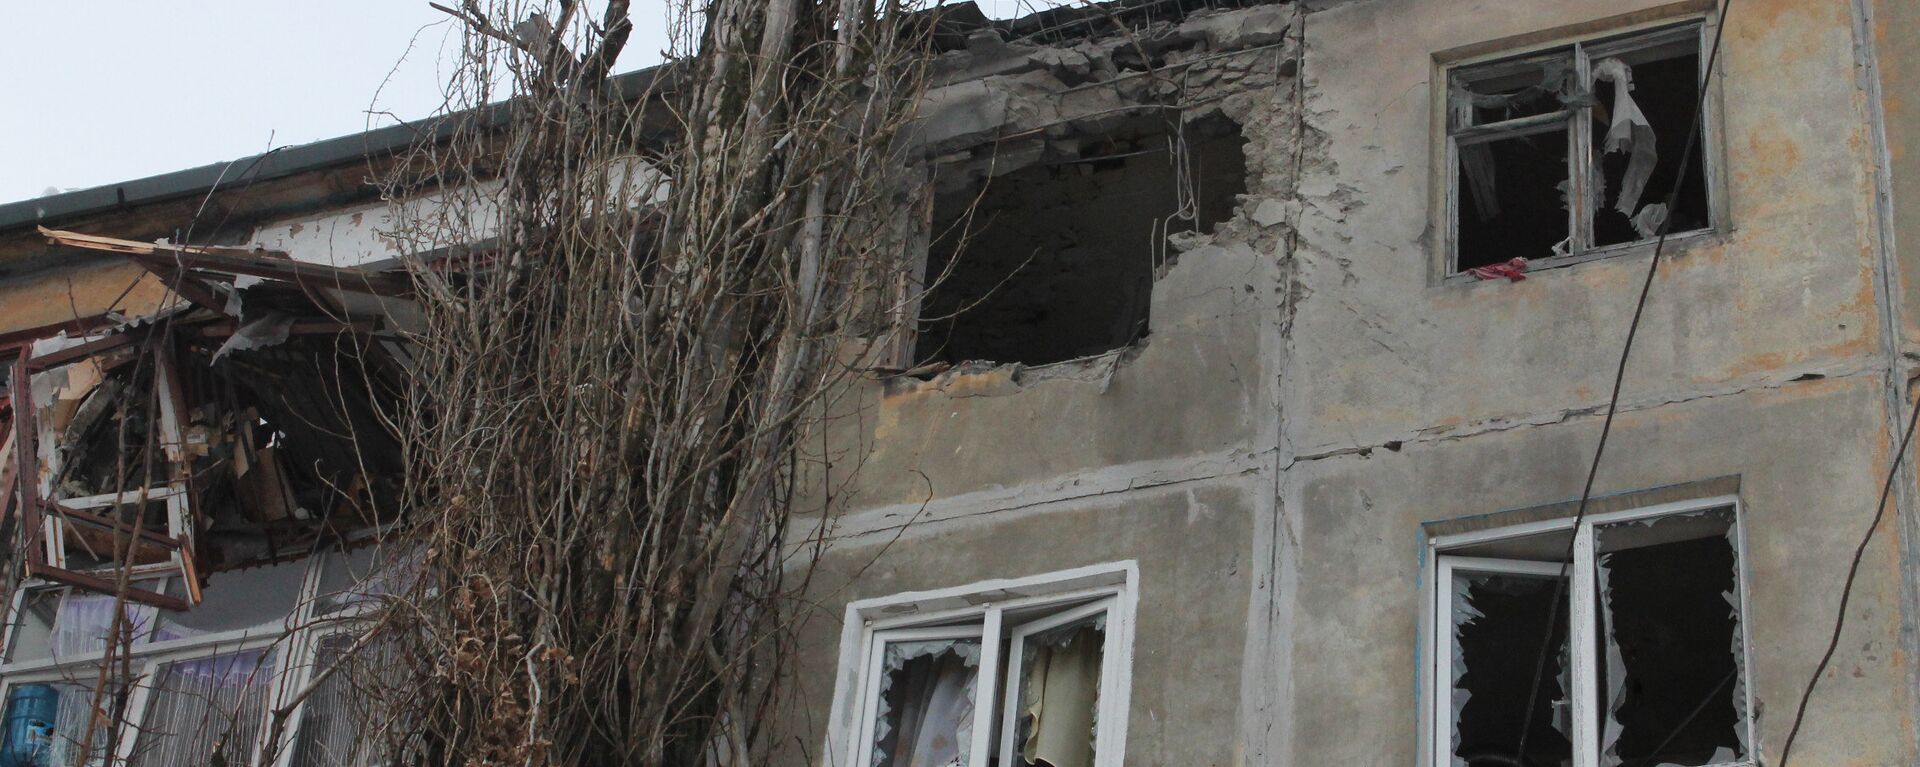 Un immeuble au Donbass après un bombardement ukrainien - Sputnik Afrique, 1920, 10.12.2022